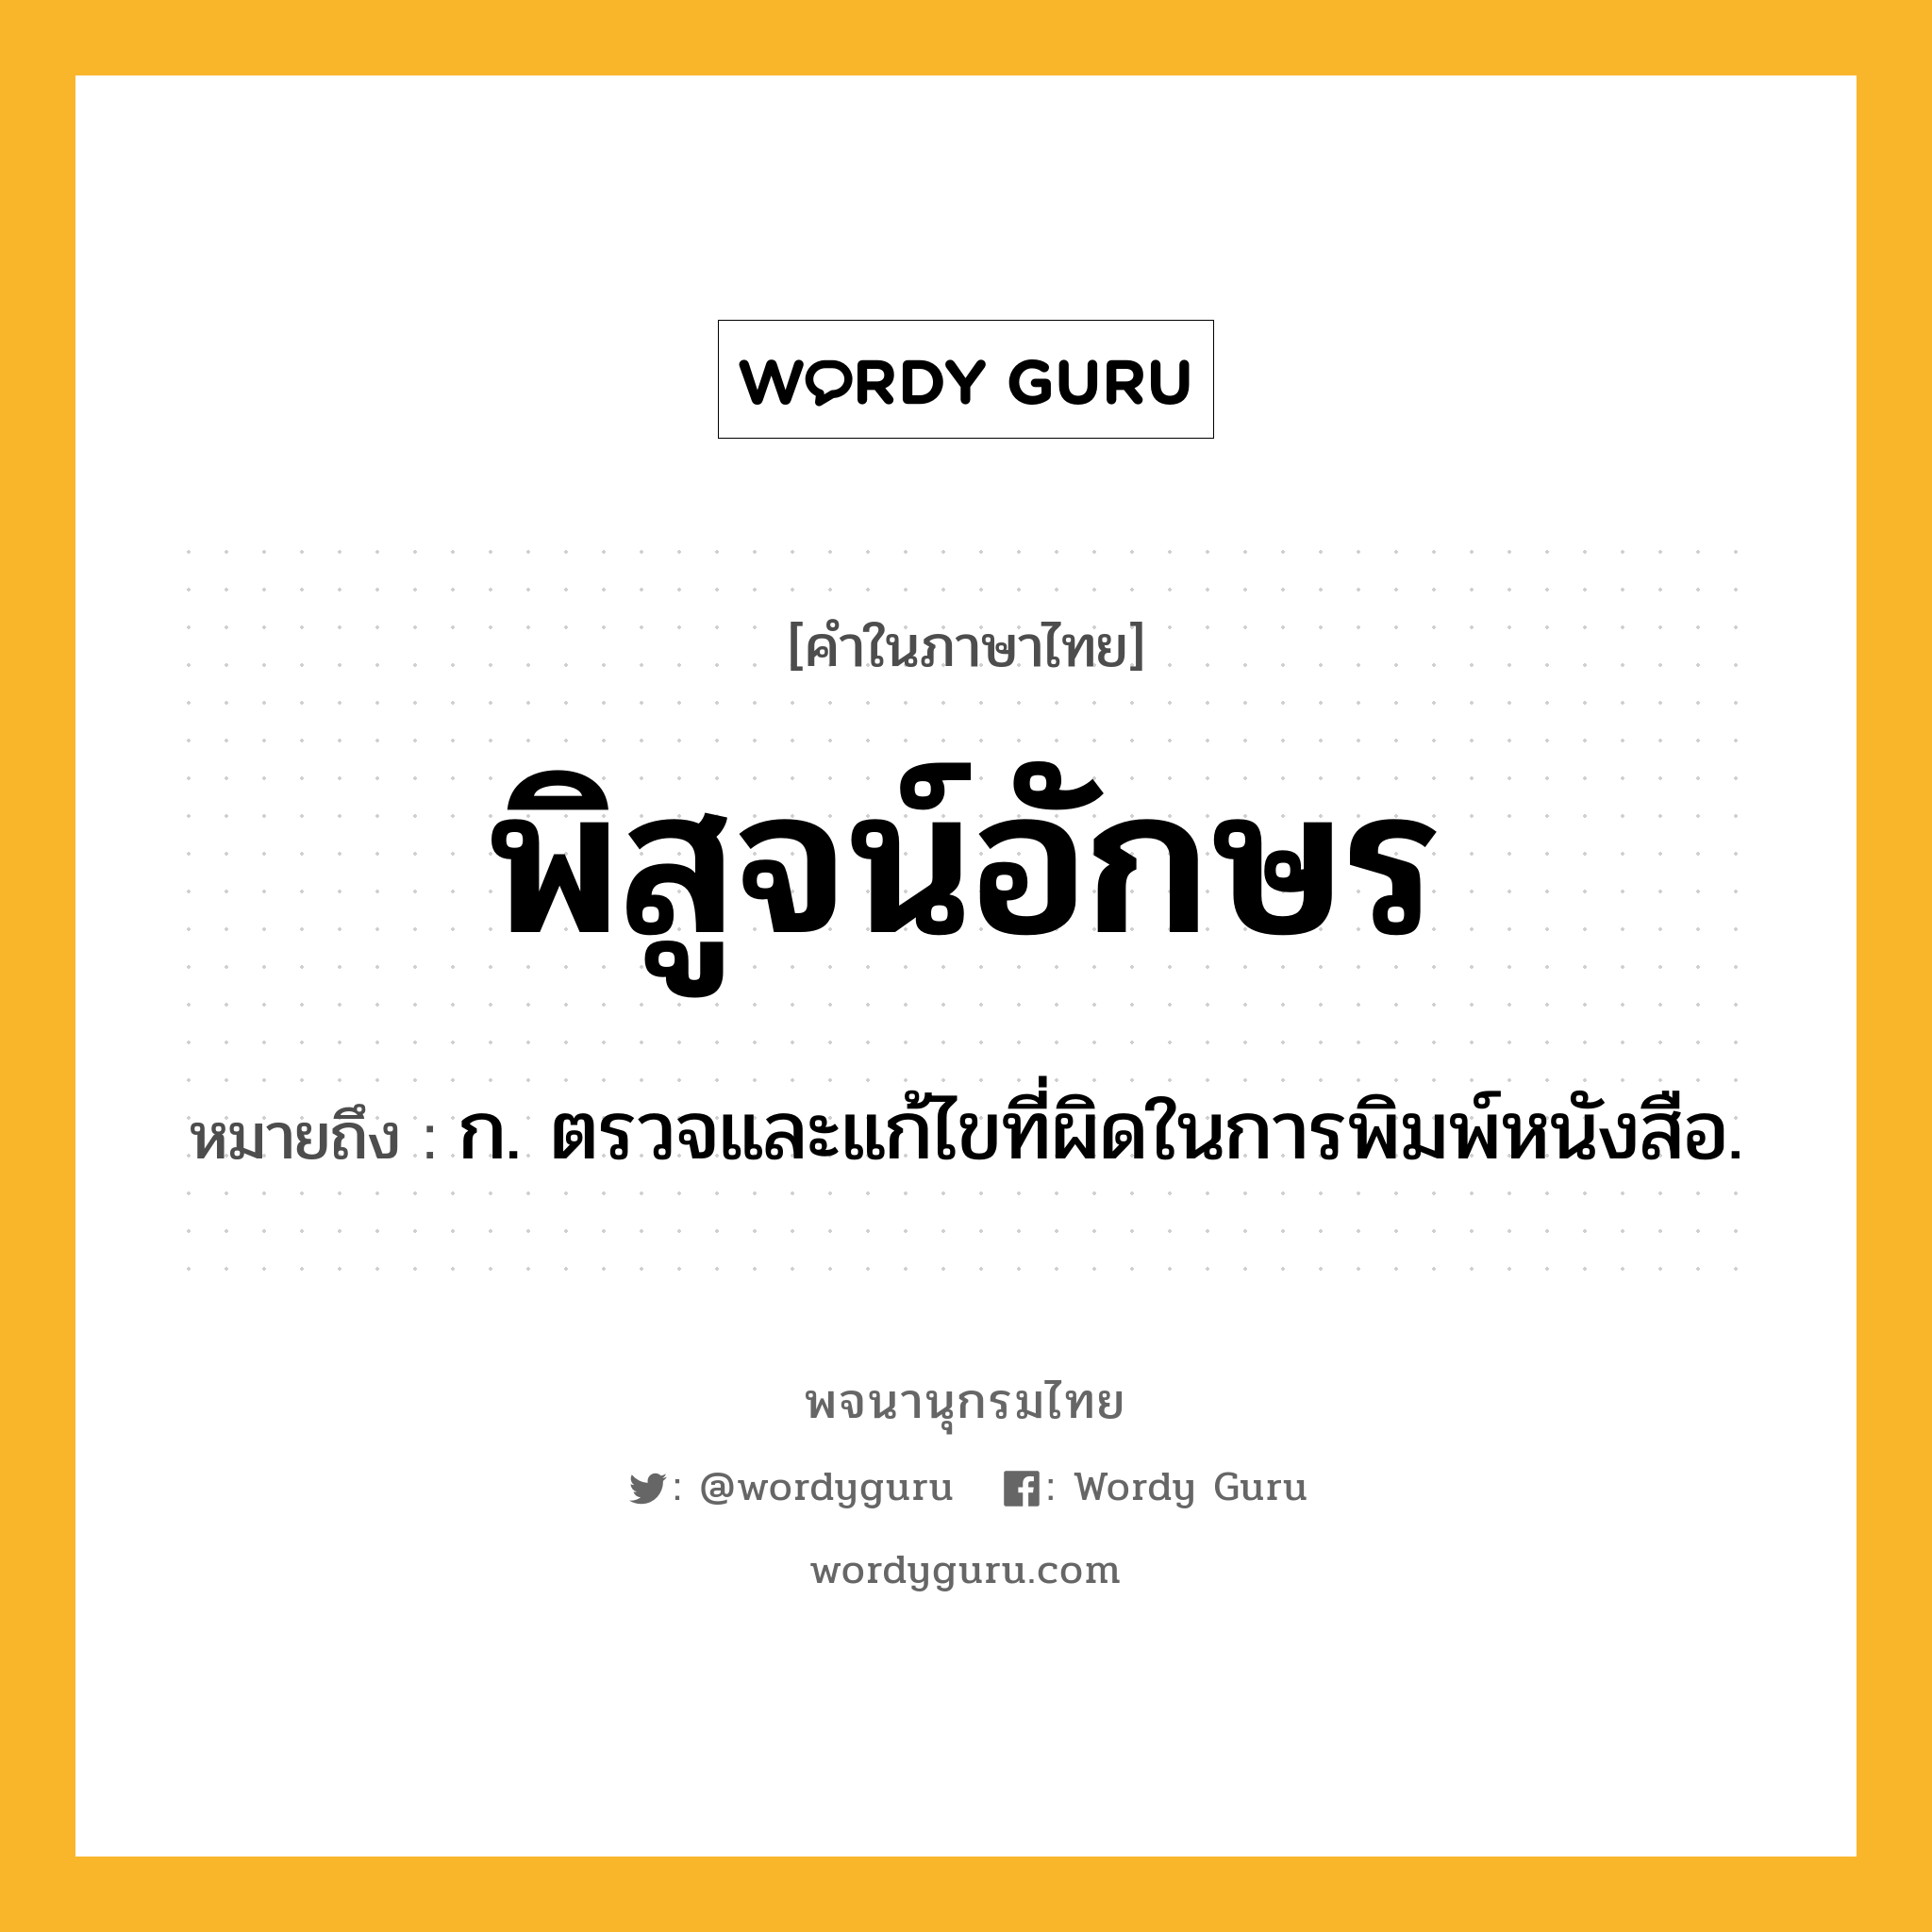 พิสูจน์อักษร ความหมาย หมายถึงอะไร?, คำในภาษาไทย พิสูจน์อักษร หมายถึง ก. ตรวจและแก้ไขที่ผิดในการพิมพ์หนังสือ.